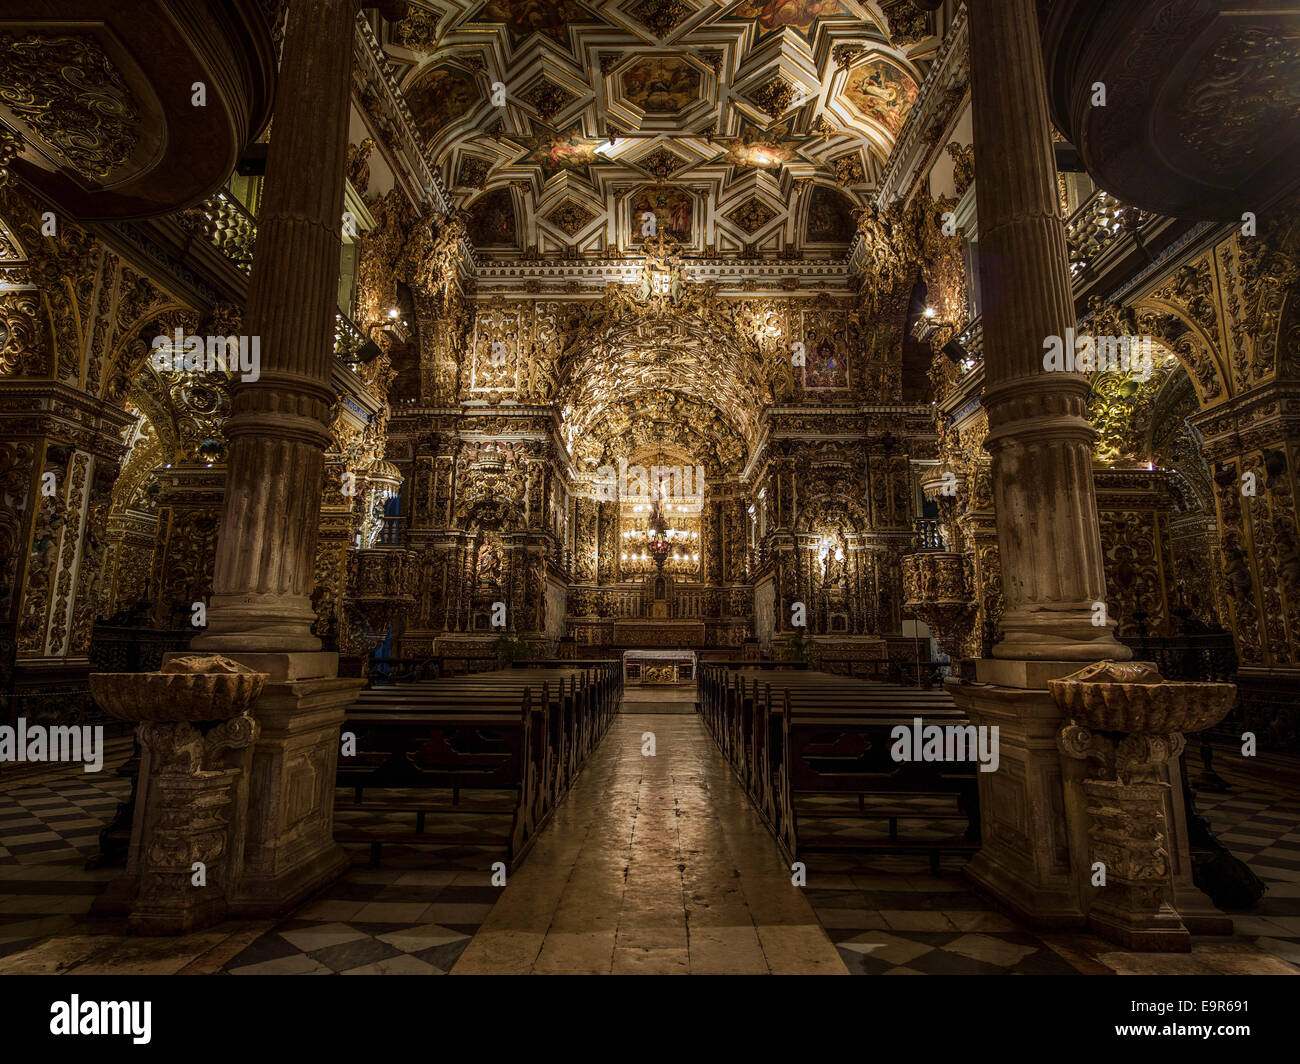 Les intérieurs de l'église São Francisco 17e siècle dans la région de Salvador da Bahia, Brésil. Banque D'Images